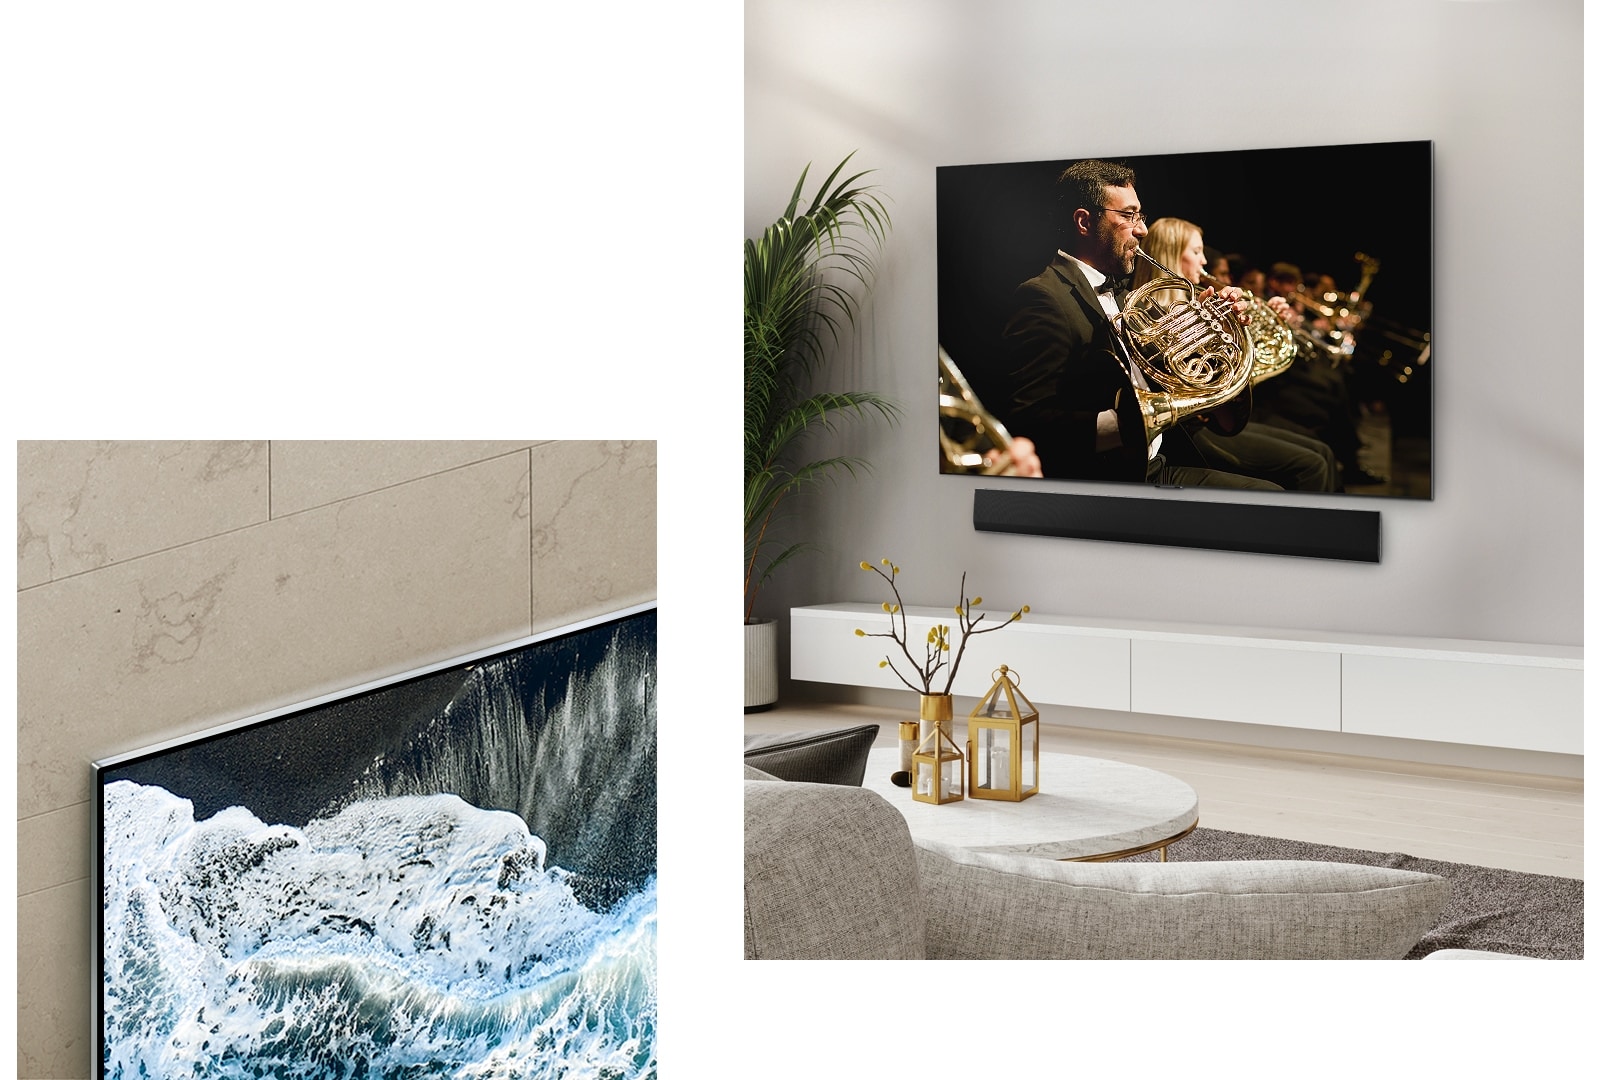 Телевизор LG OLED TV, OLED G4 под углом относительно мраморной стены, демонстрирующий, как он сливается с стеной. Телевизор LG OLED TV, OLED G4 и звуковая панель LG Soundbar в чистом жилом помещении, установленные плоско на стене, с оркестровым выступлением на экране. 